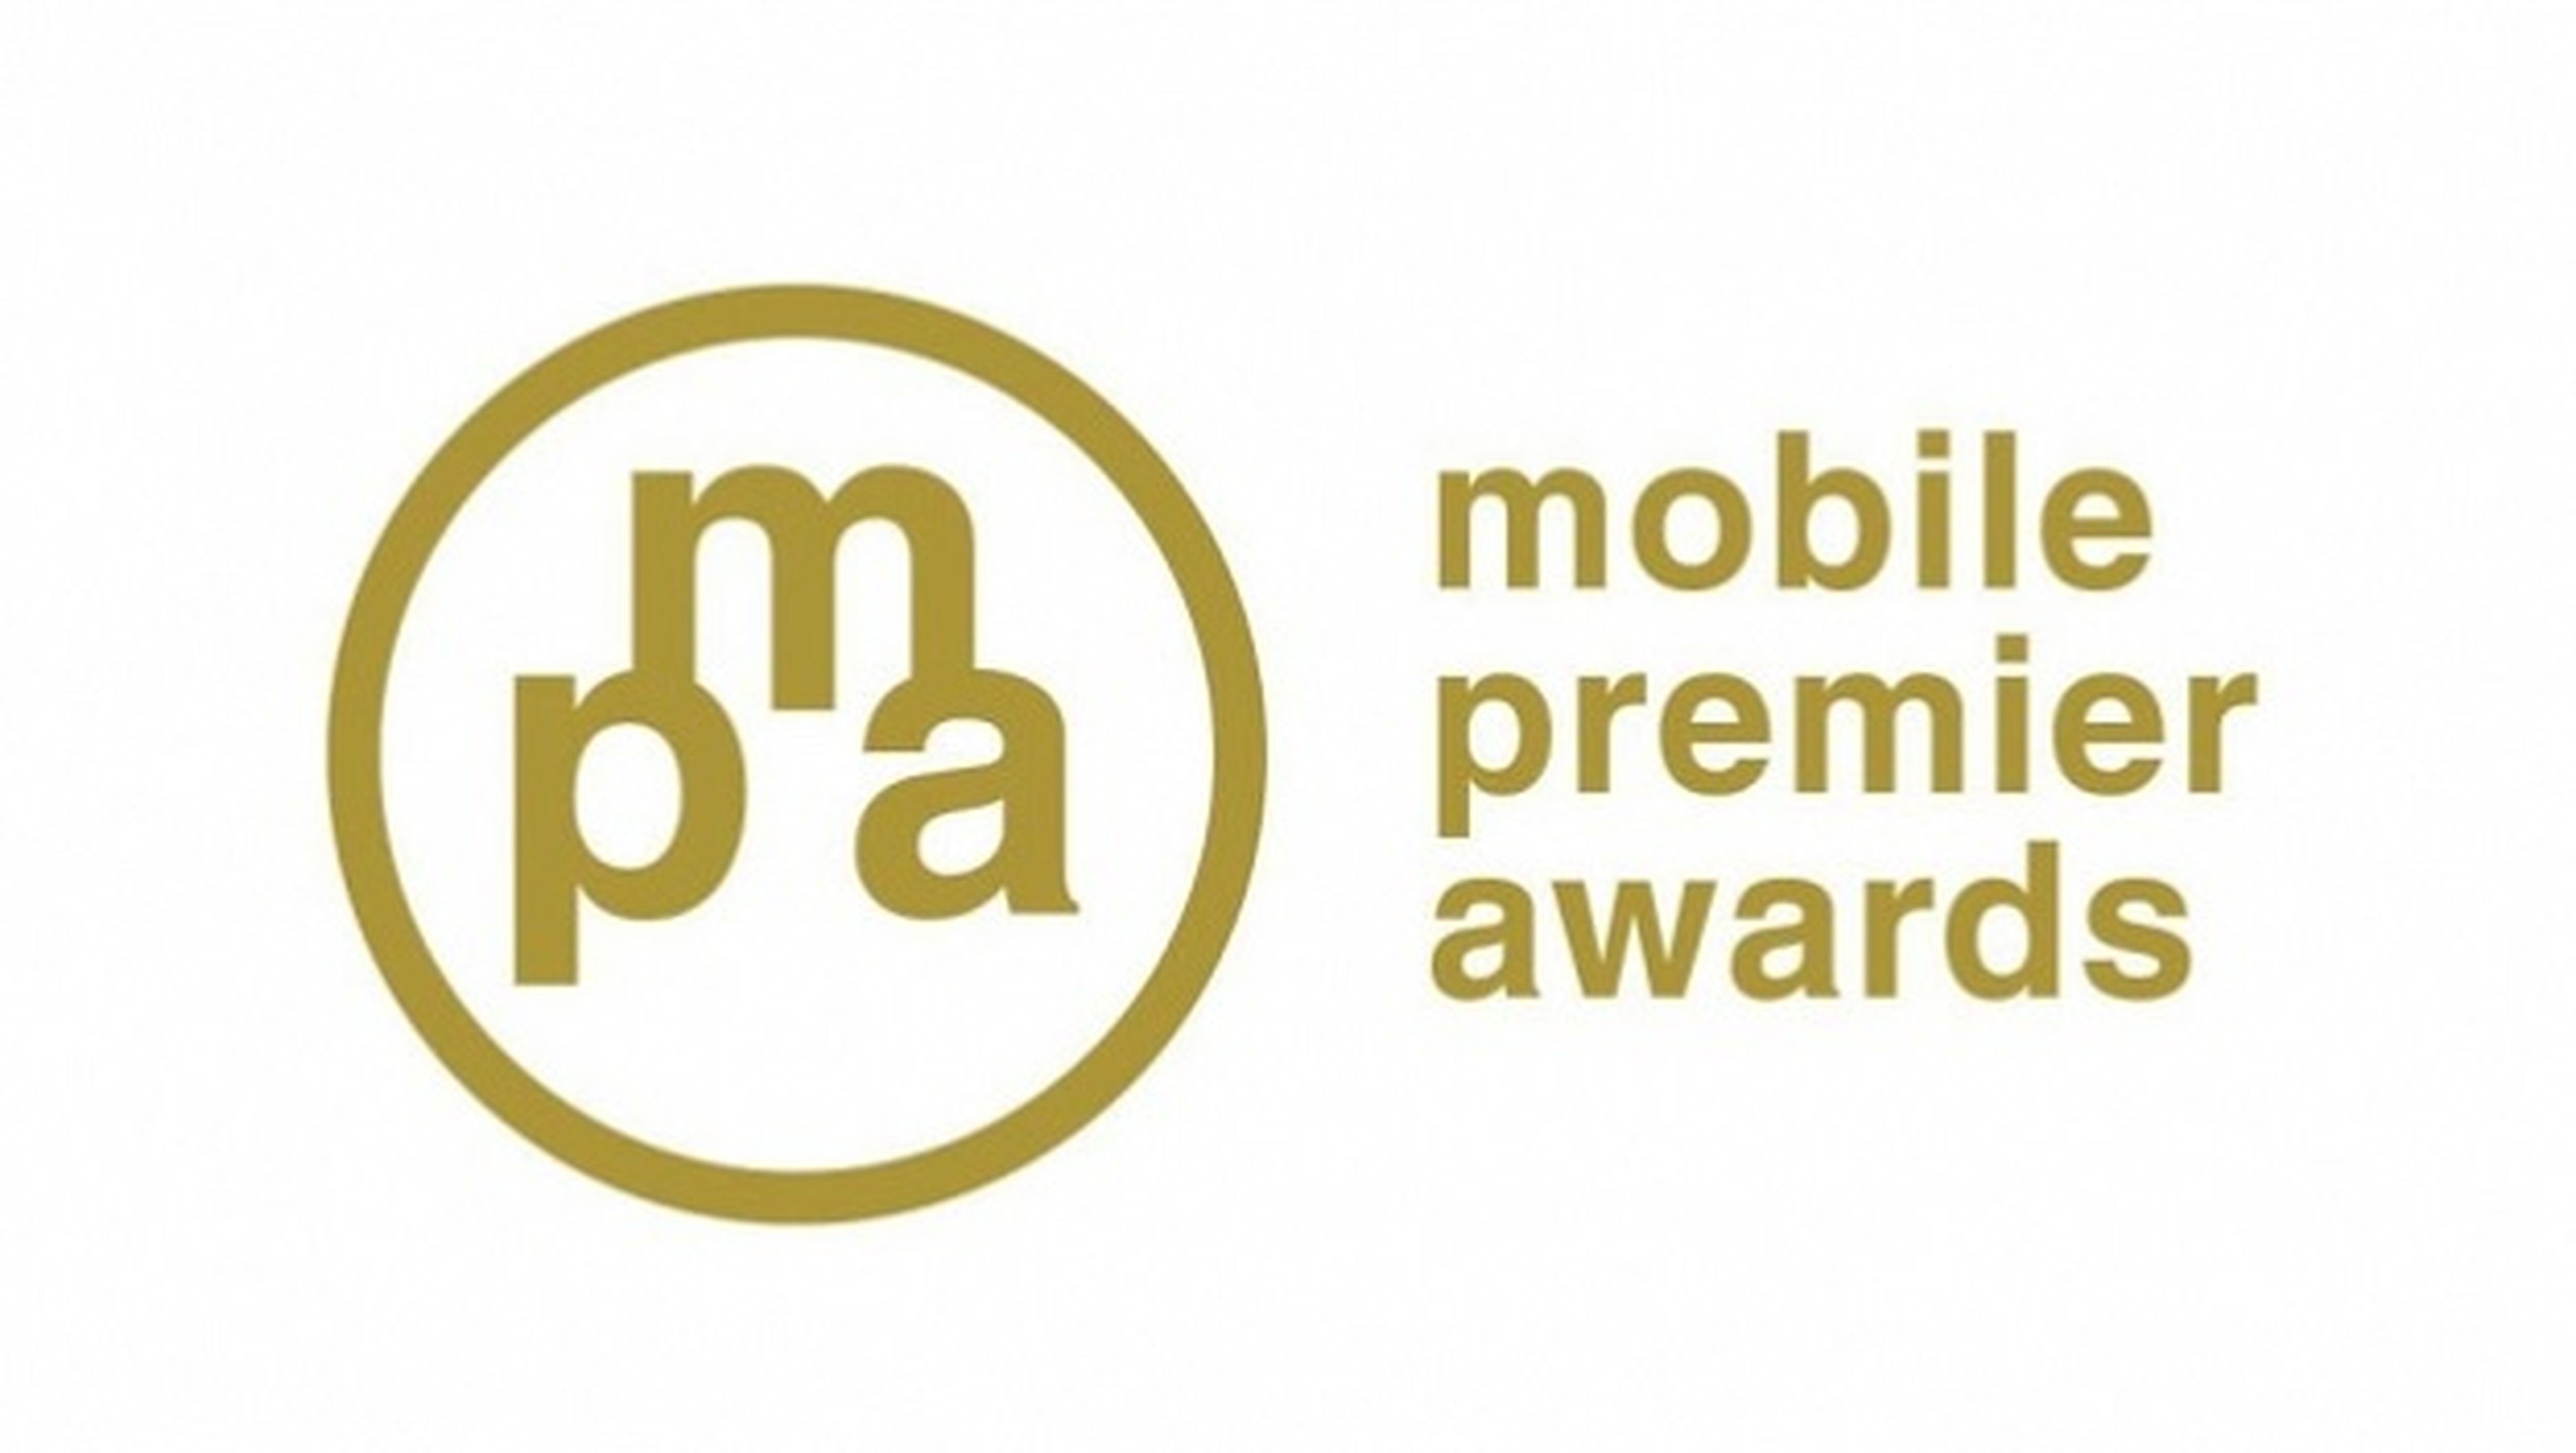 Las mejores apps del 2014 según los Mobile Premier Awards